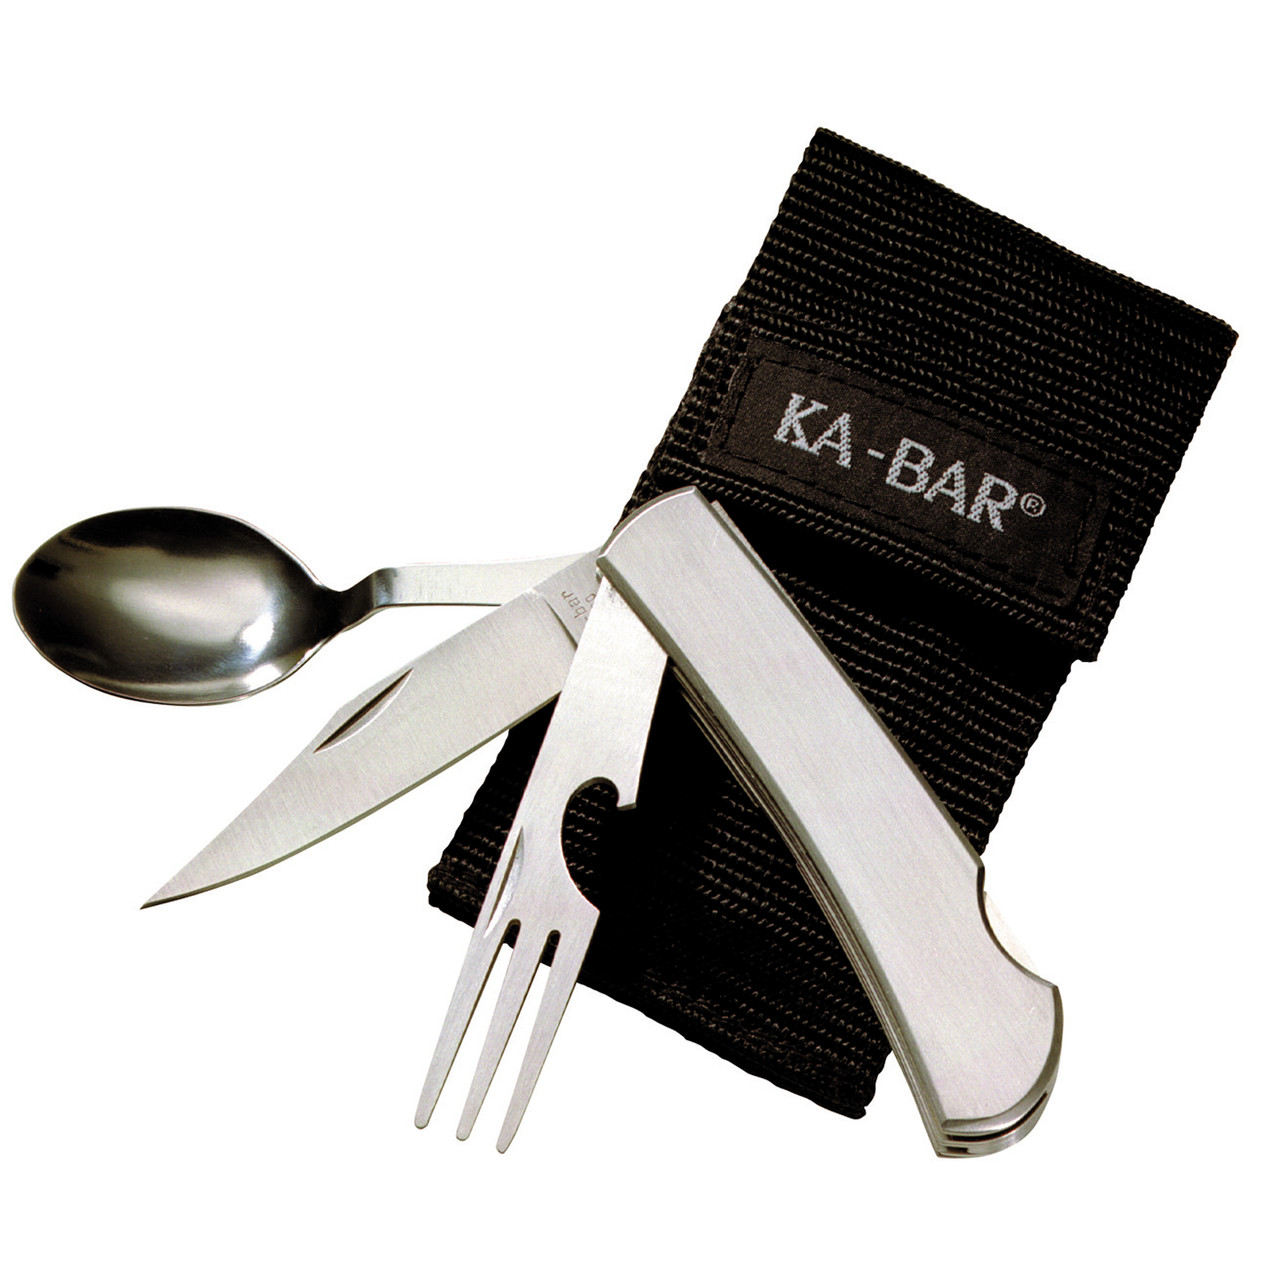 KABAR 1300 Hobo Fork/knife/spoon Ss Bx